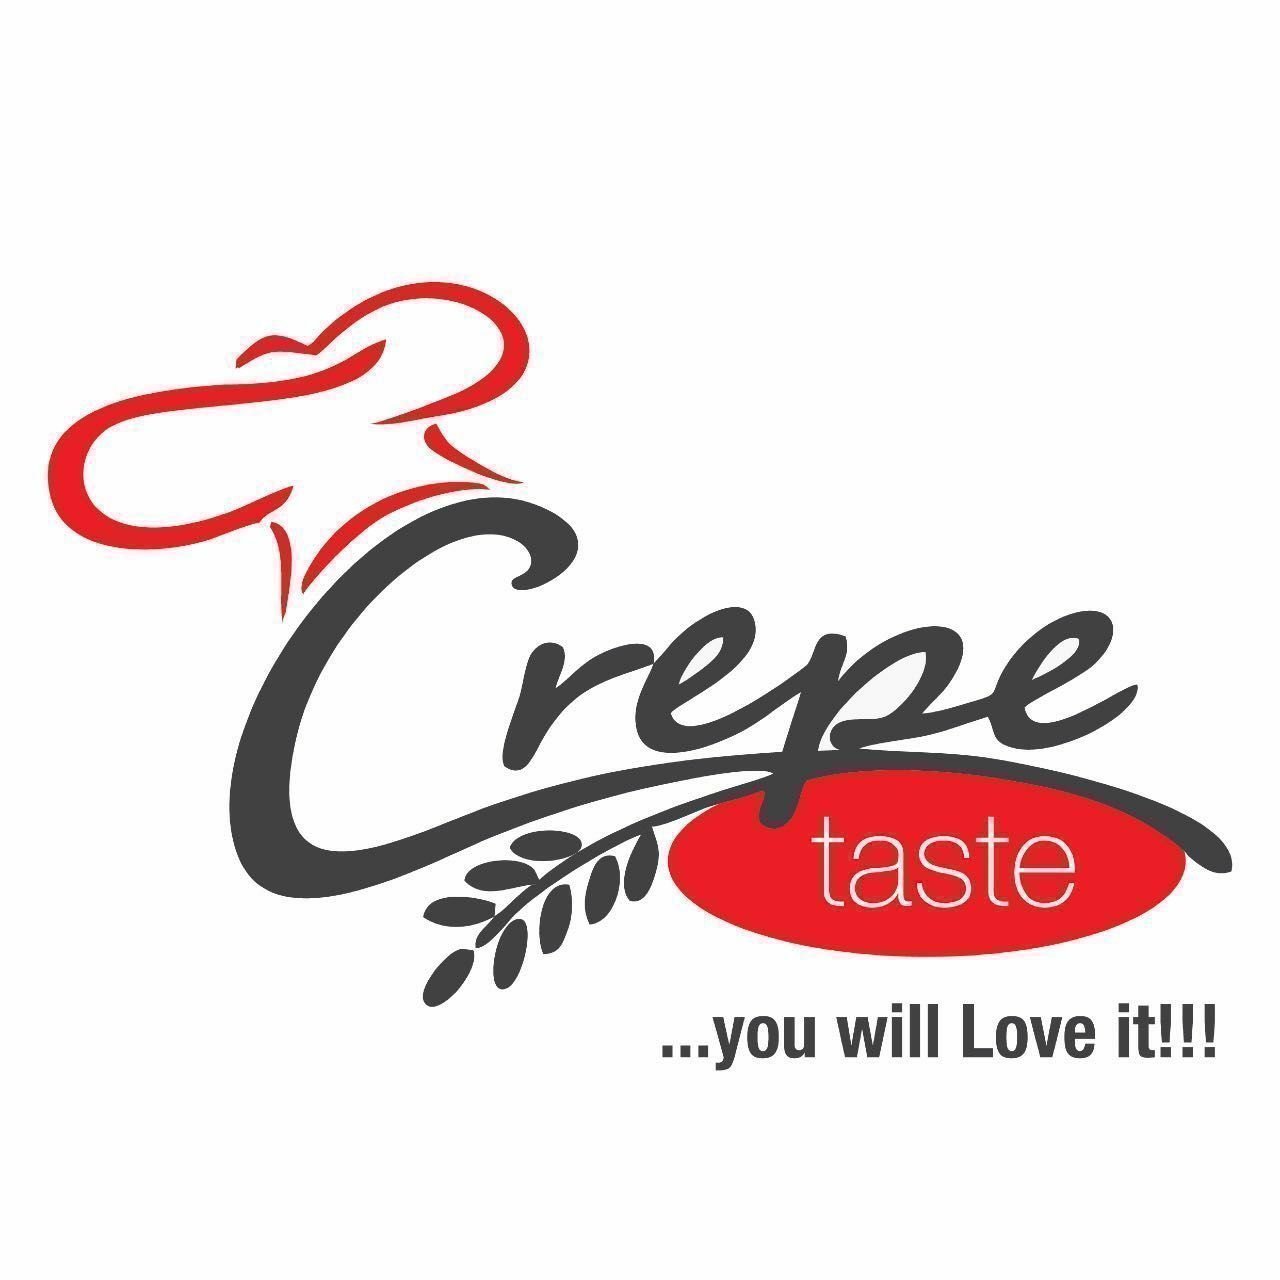 Crepe Taste